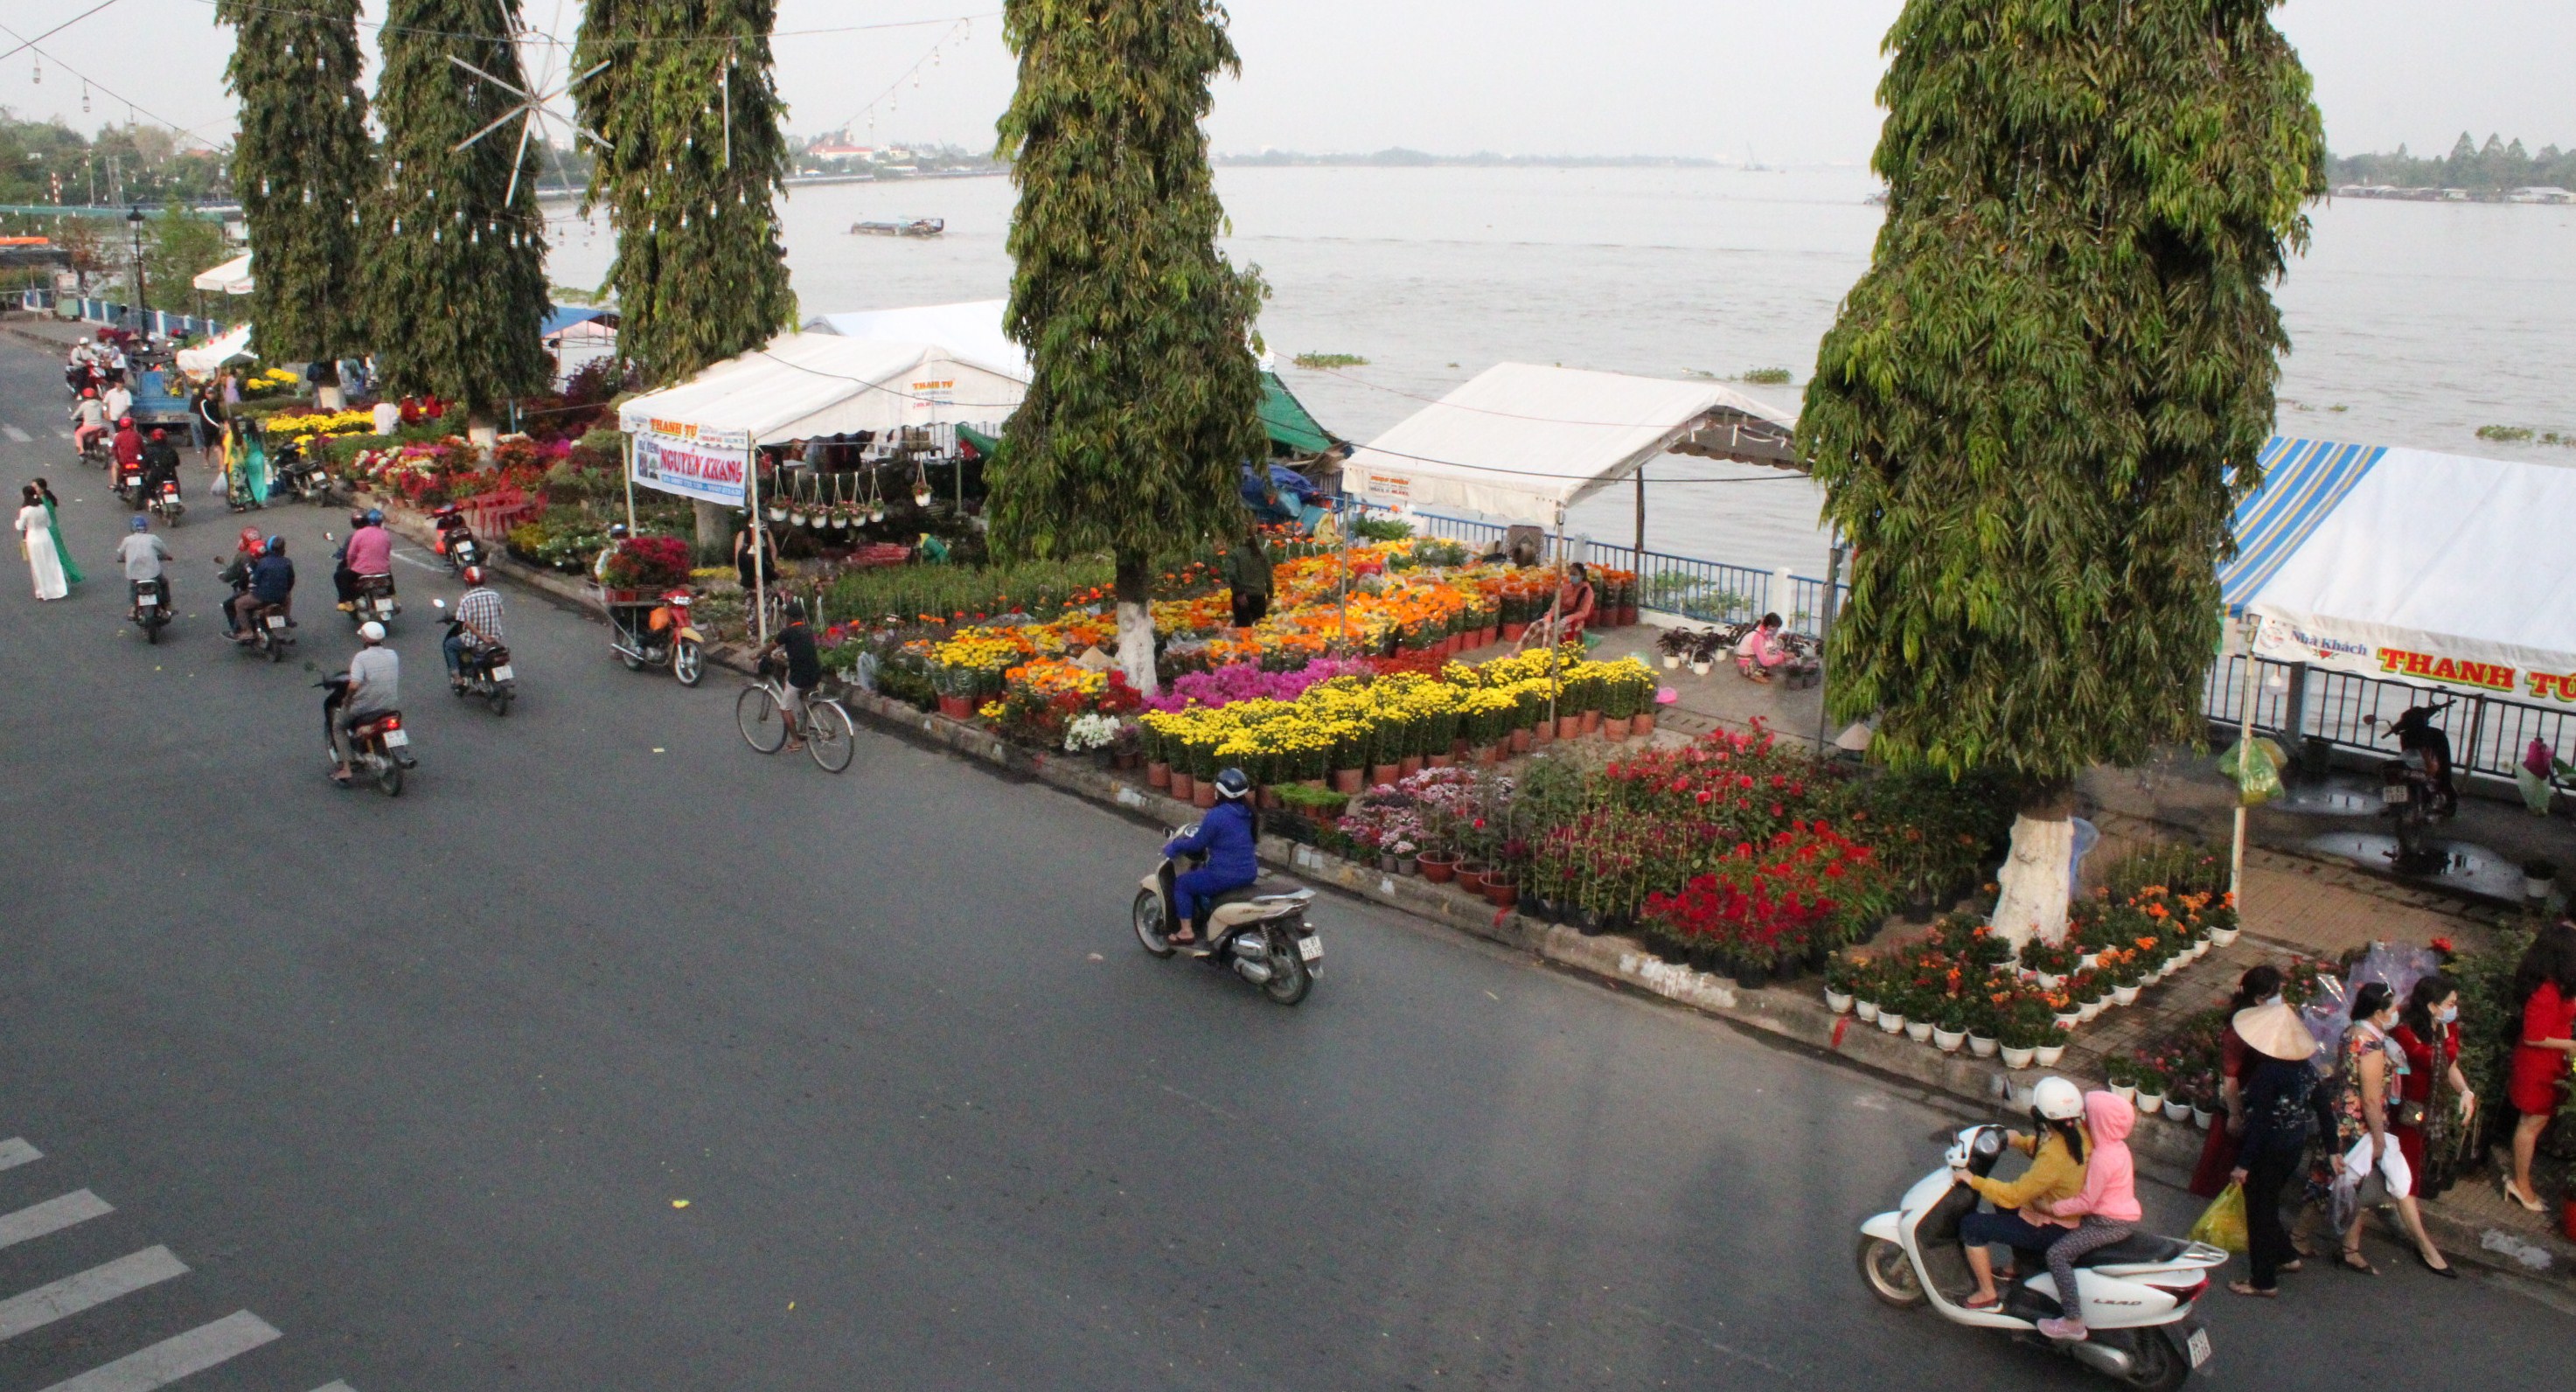 Chợ hoa, kiểng thành phố Vĩnh Long - Điểm đến hấp dẫn  cho du khách tham quan